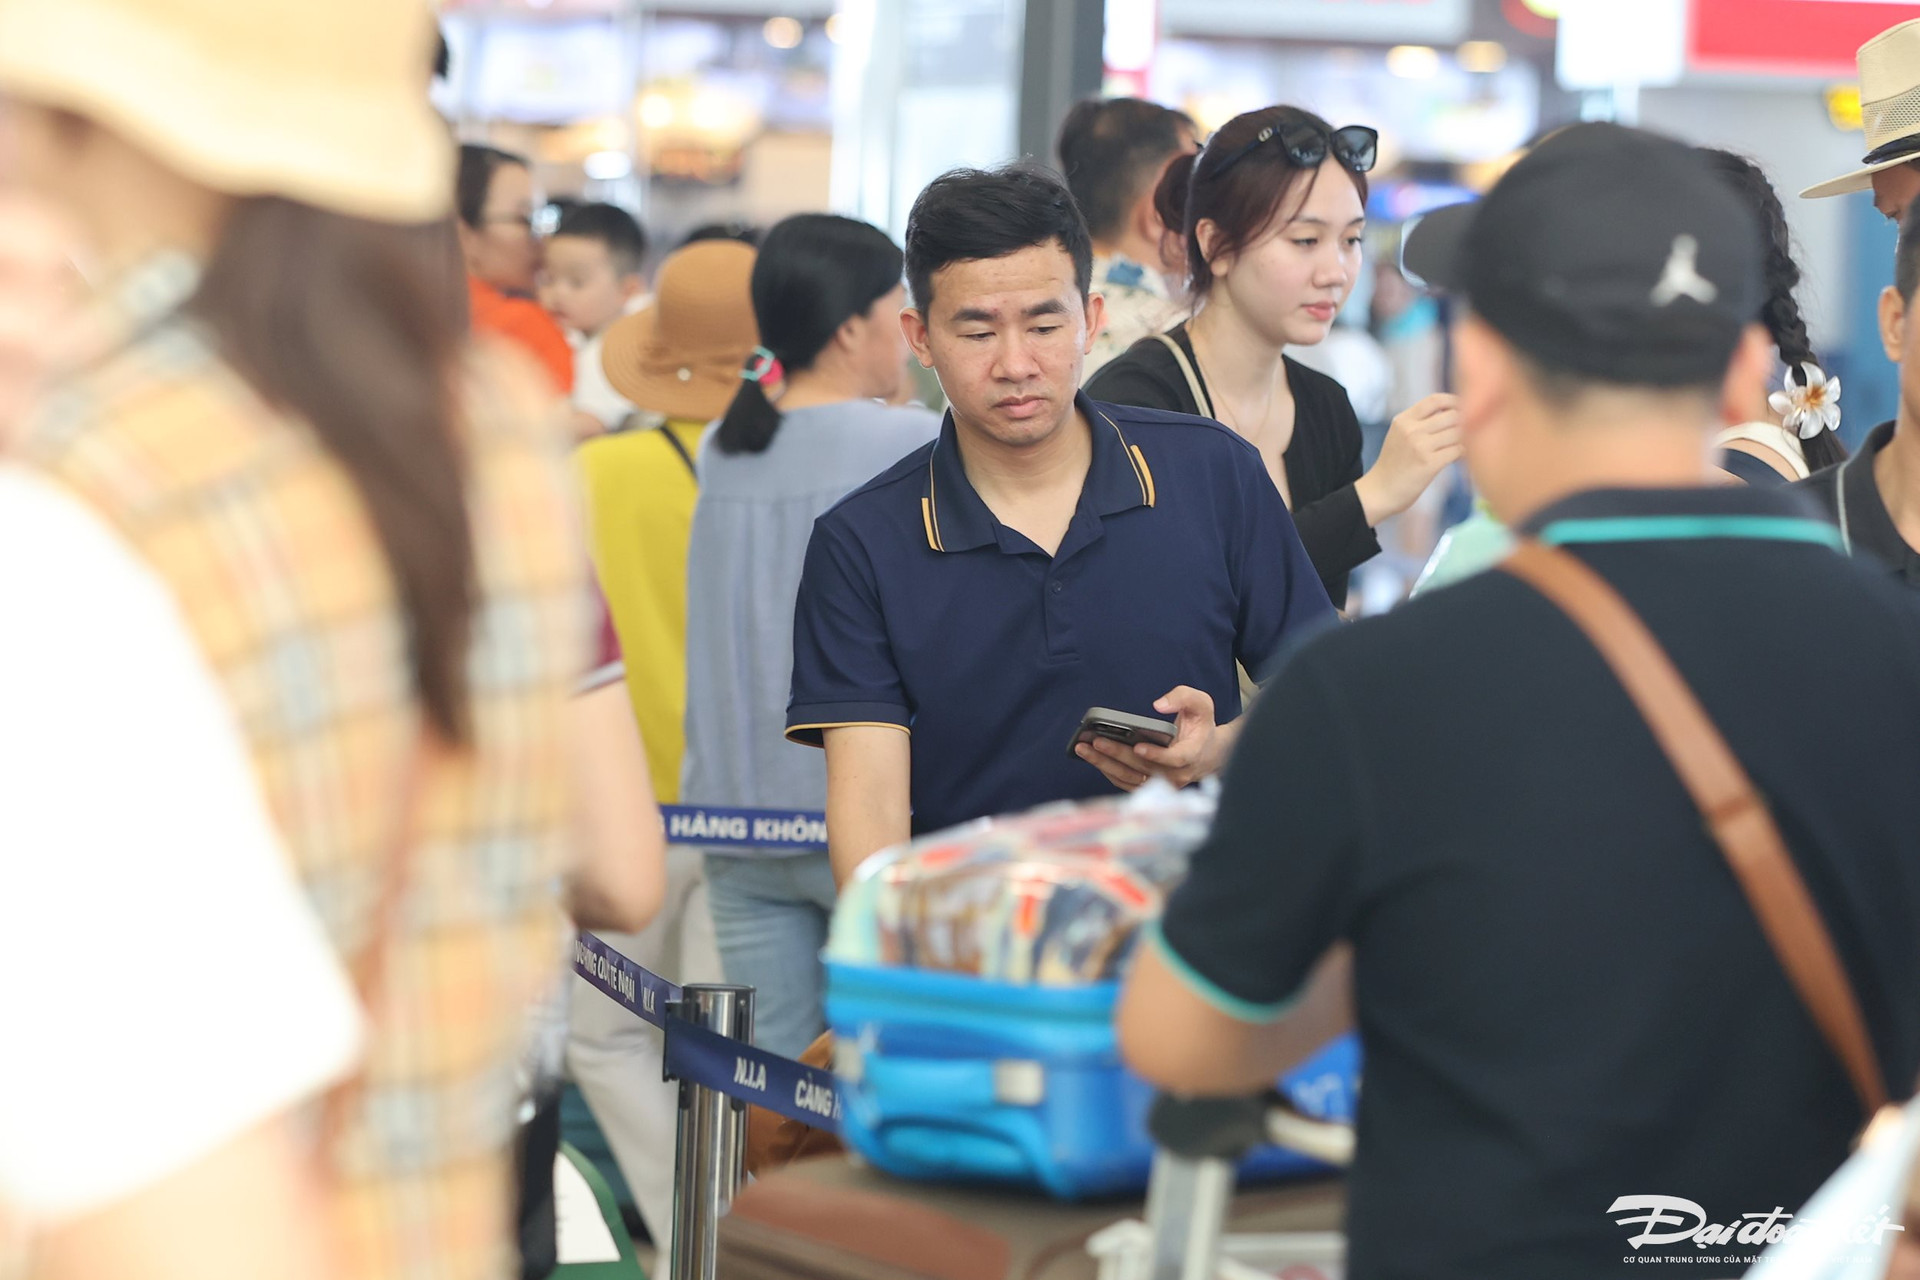 Theo lãnh đạo Cảng HKQT Nội Bài, do lượng khách đông, sân bay chính thức áp dụng biện pháp tăng cường an ninh cấp độ 1 phục vụ cao điểm nghỉ lễ bắt đầu từ hôm nay đến 1/5.